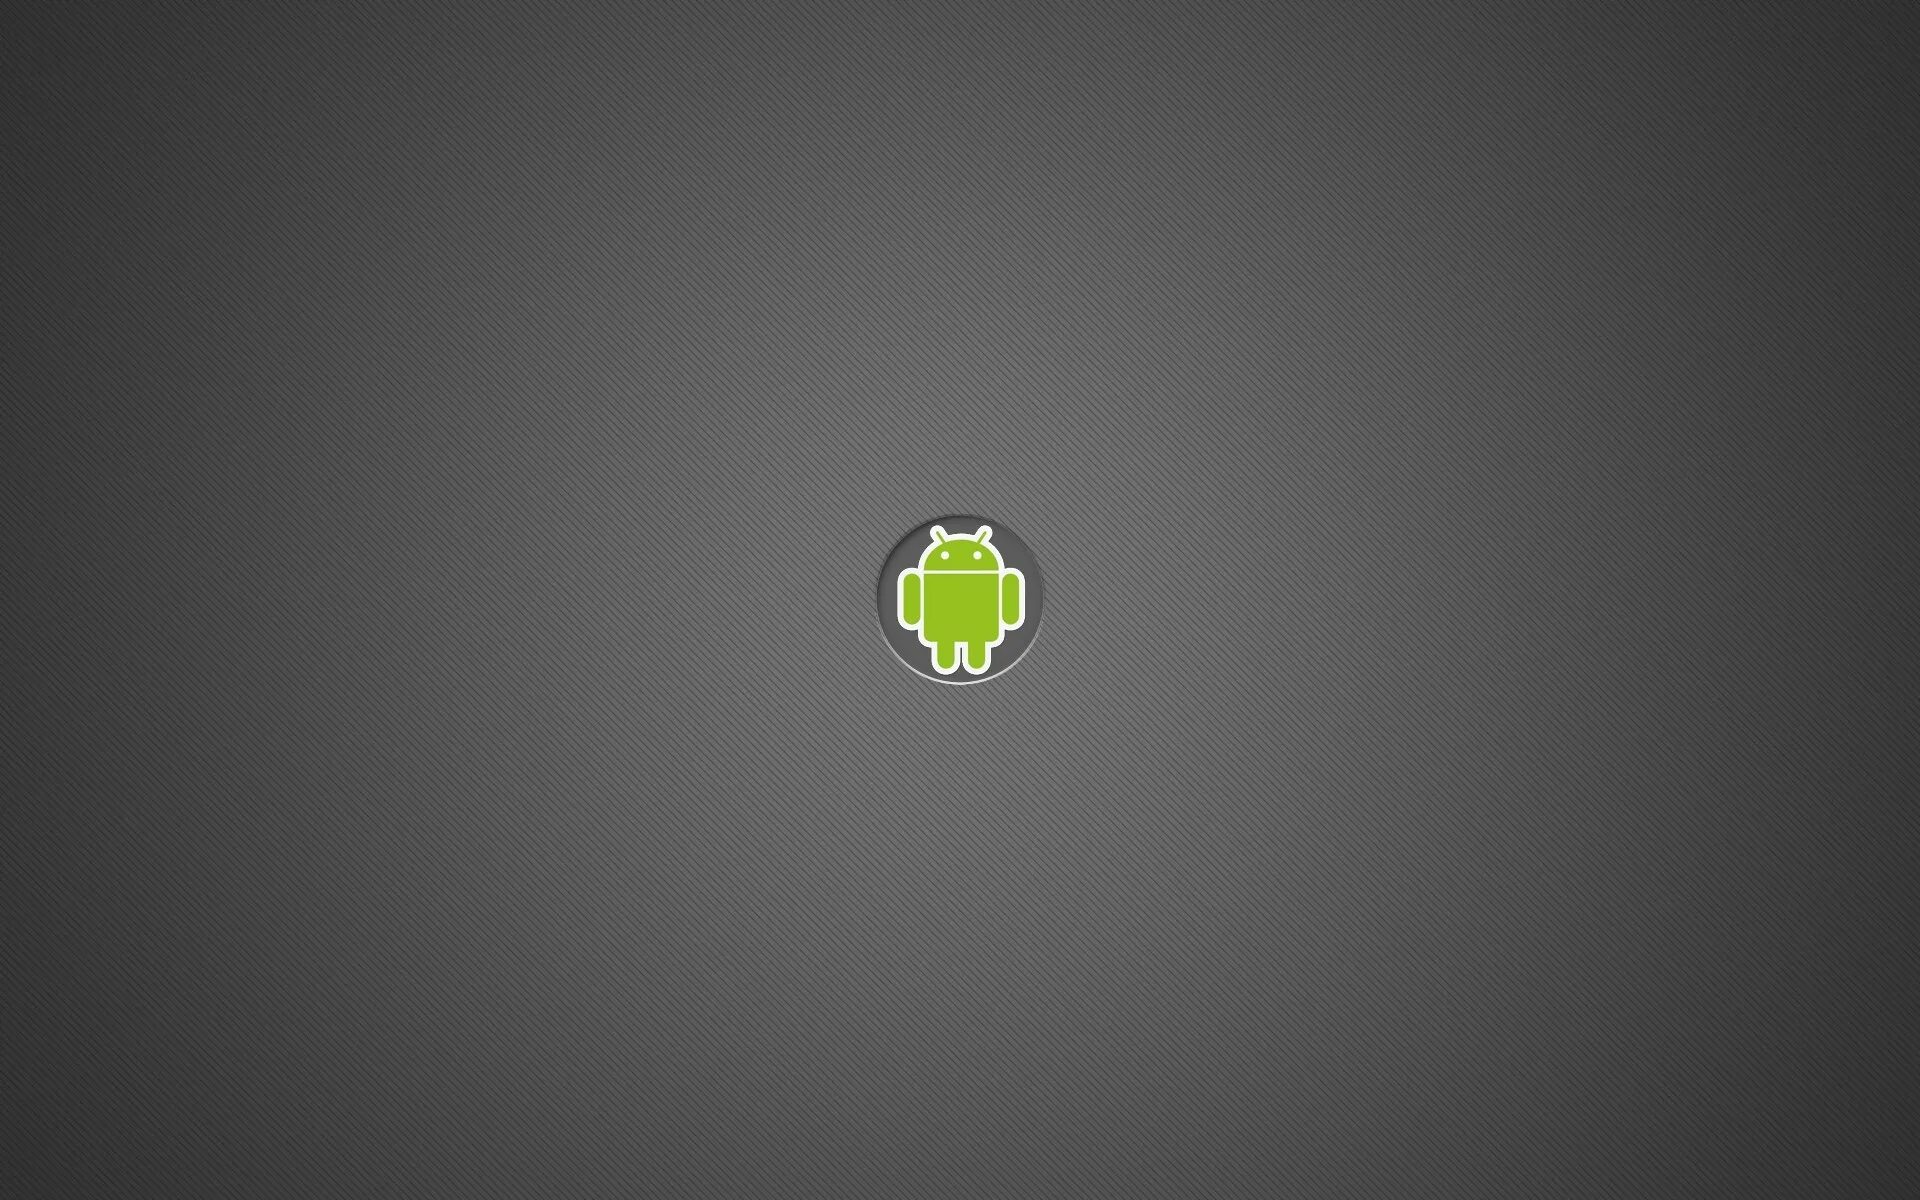 Обои Android. Обои на рабочий стол андроид. Серый фон на андроид. Стандартные обои Android. Минималистичный андроид